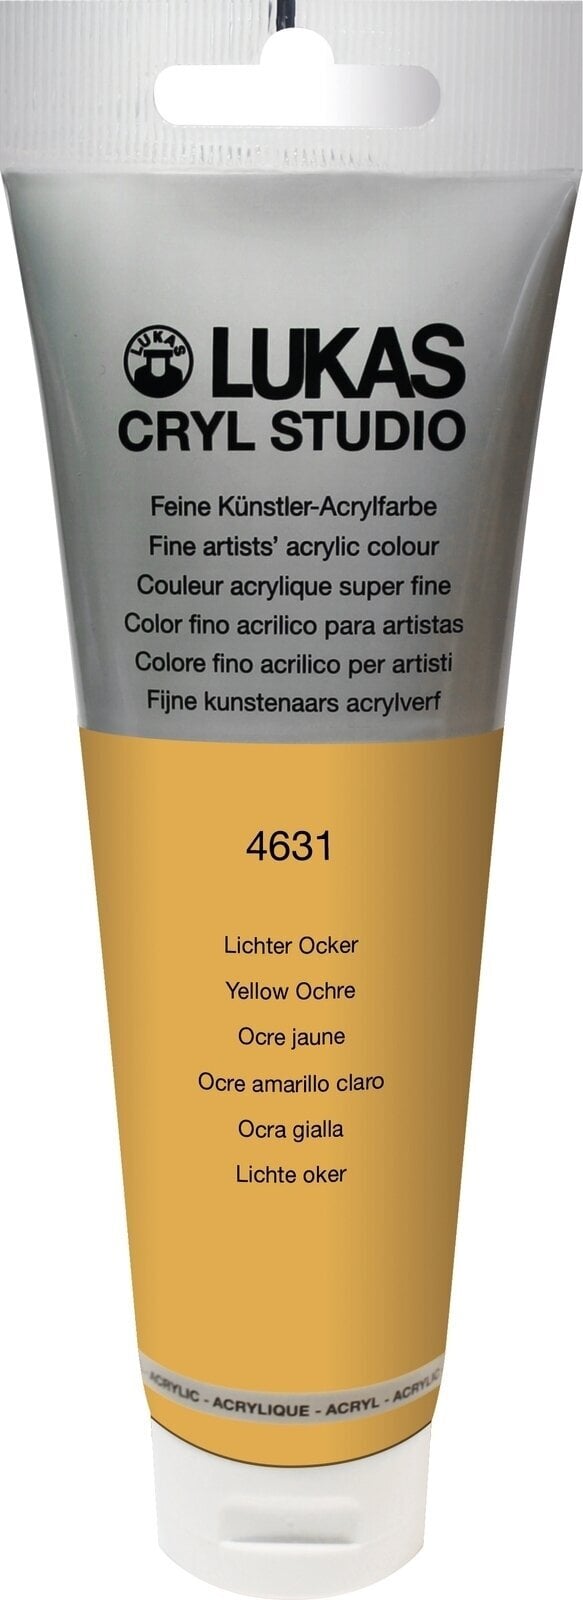 Culoare acrilică Lukas Cryl Studio Acrylic Paint Plastic Tube Vopsea acrilică Galben Ochre 125 ml 1 buc